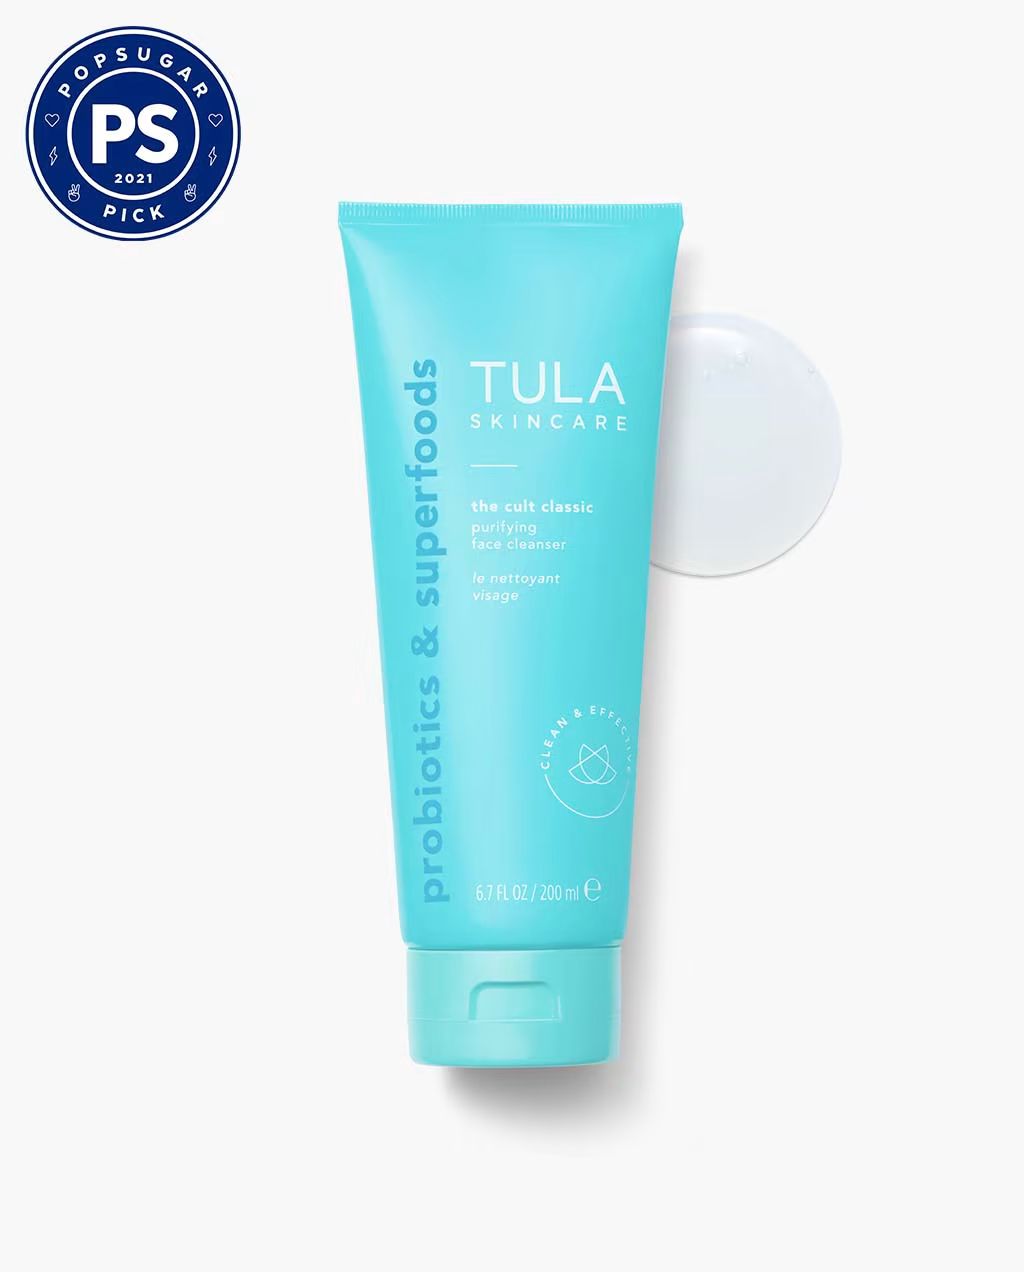 the cult classic | Tula Skincare